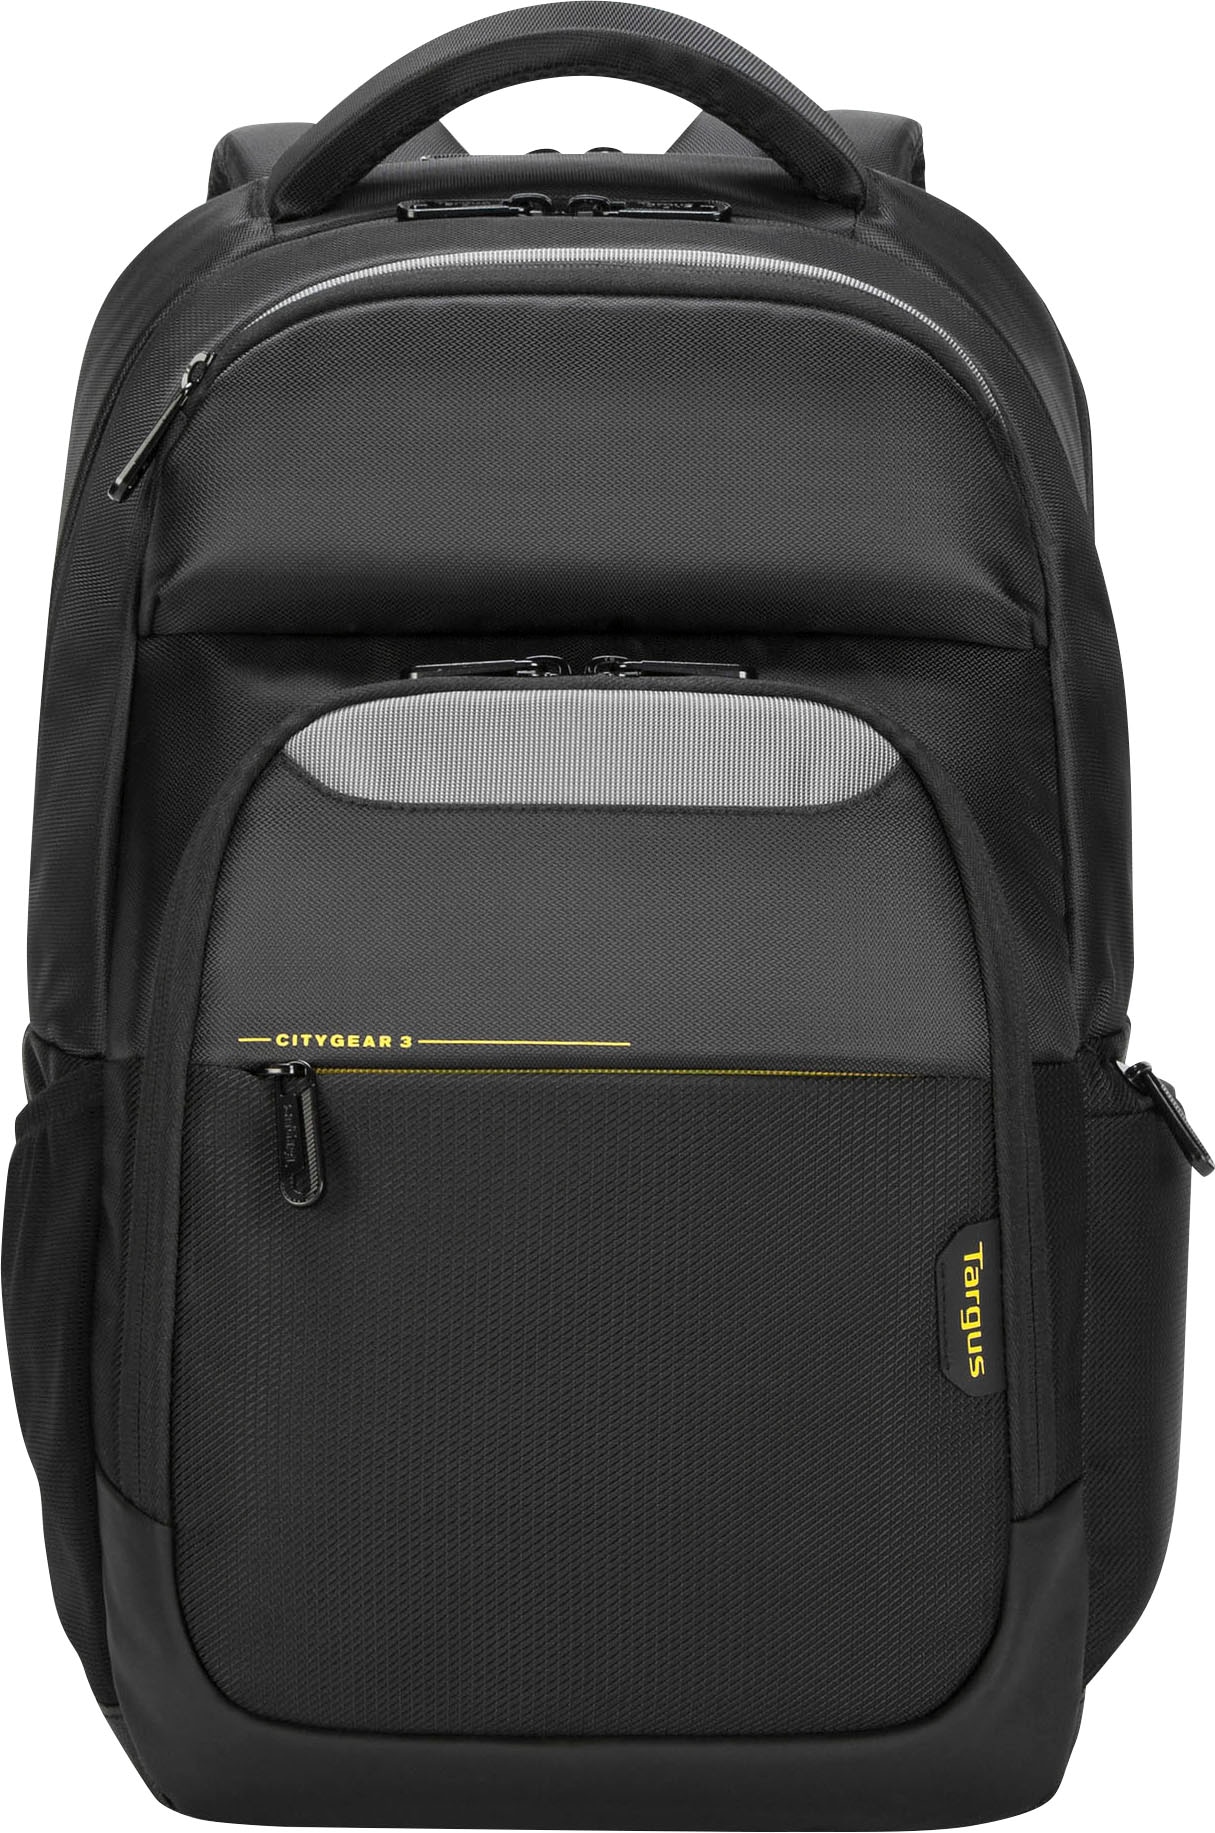 Laptoptasche im W Targus Online-Shop »CG3 Backpack 15.6 raincover« kaufen